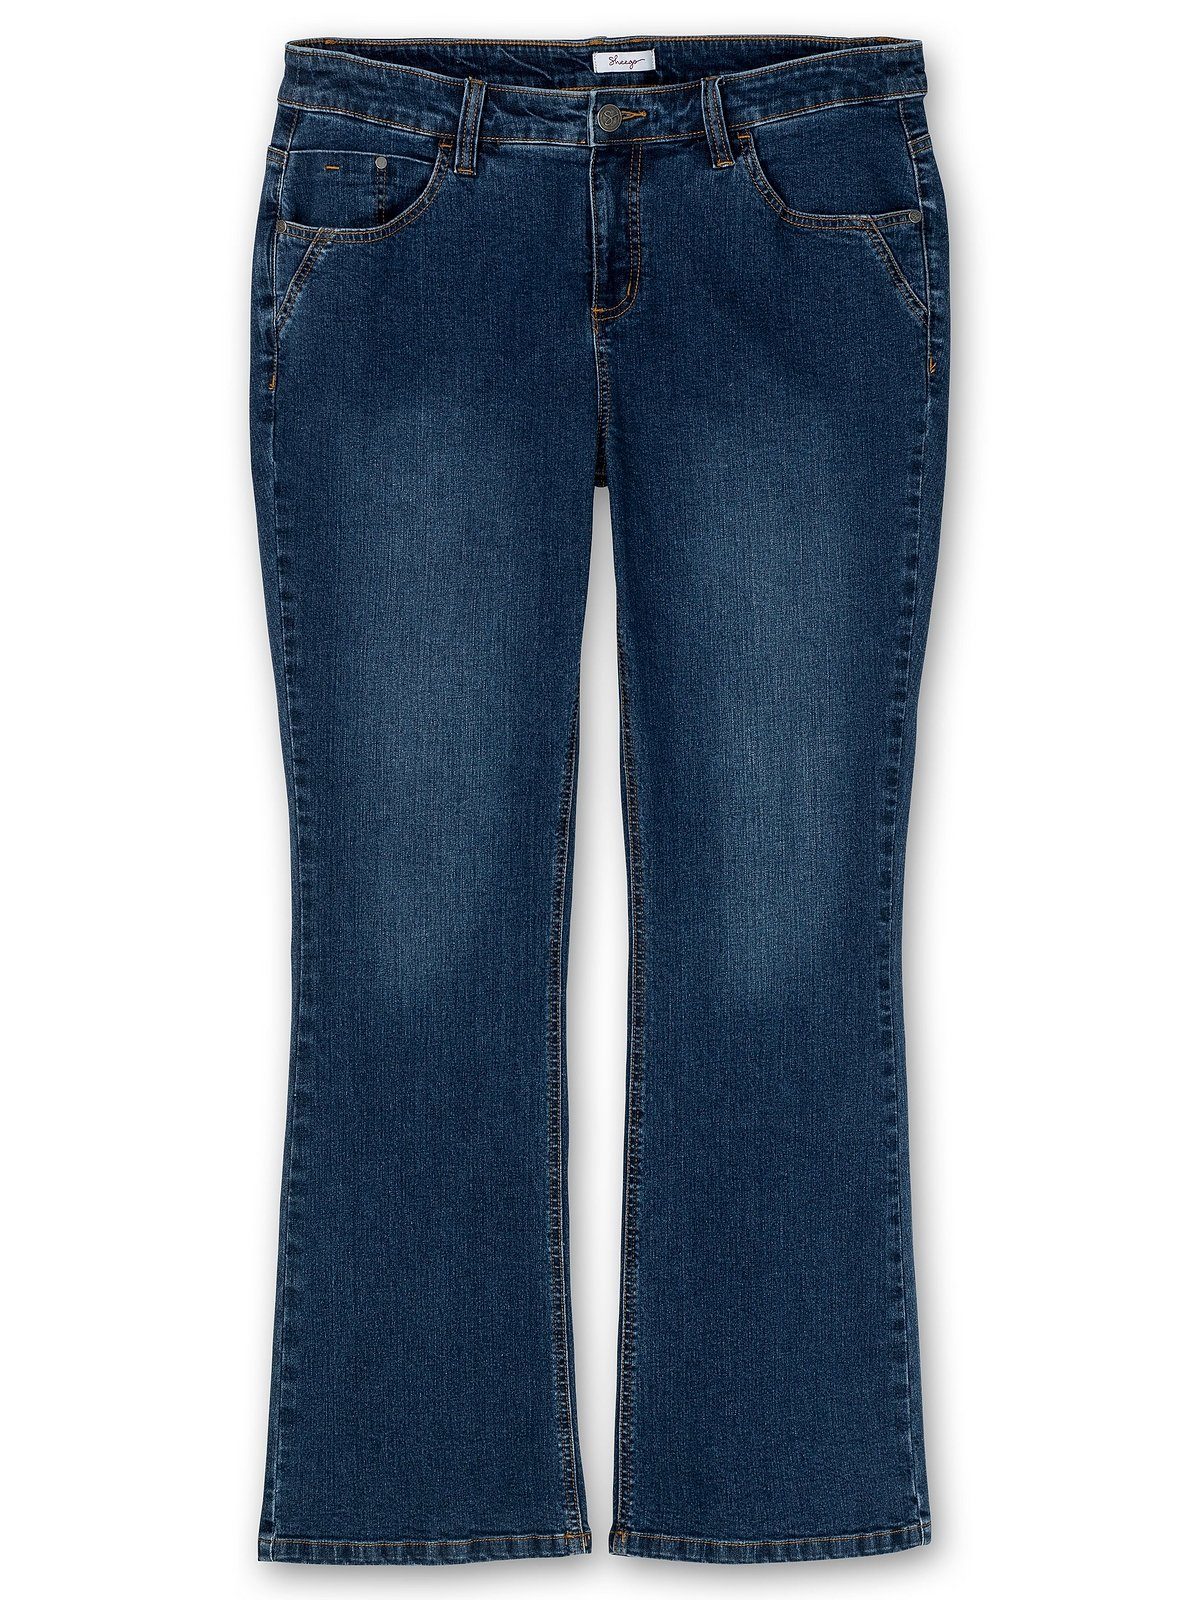 blue Bootcut-Jeans Große SUSANNE schmalen ideal viel Beinen dark bei Denim und Sheego Größen Bauch